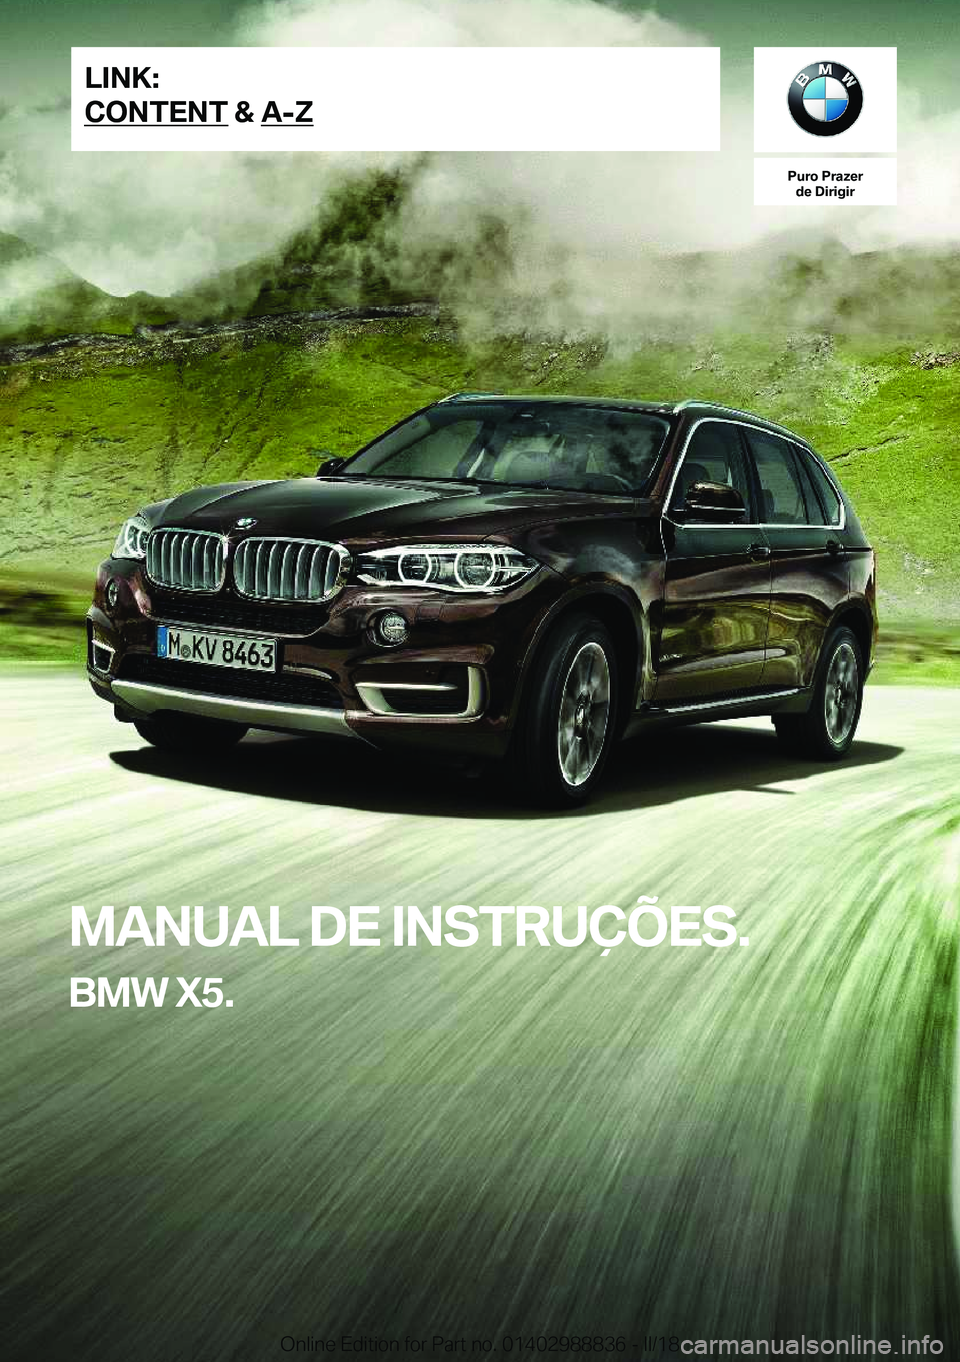 BMW X5 2018  Manual do condutor (in Portuguese) �P�u�r�o��P�r�a�z�e�r�d�e��D�i�r�i�g�i�r
�M�A�N�U�A�L��D�E��I�N�S�T�R�U�